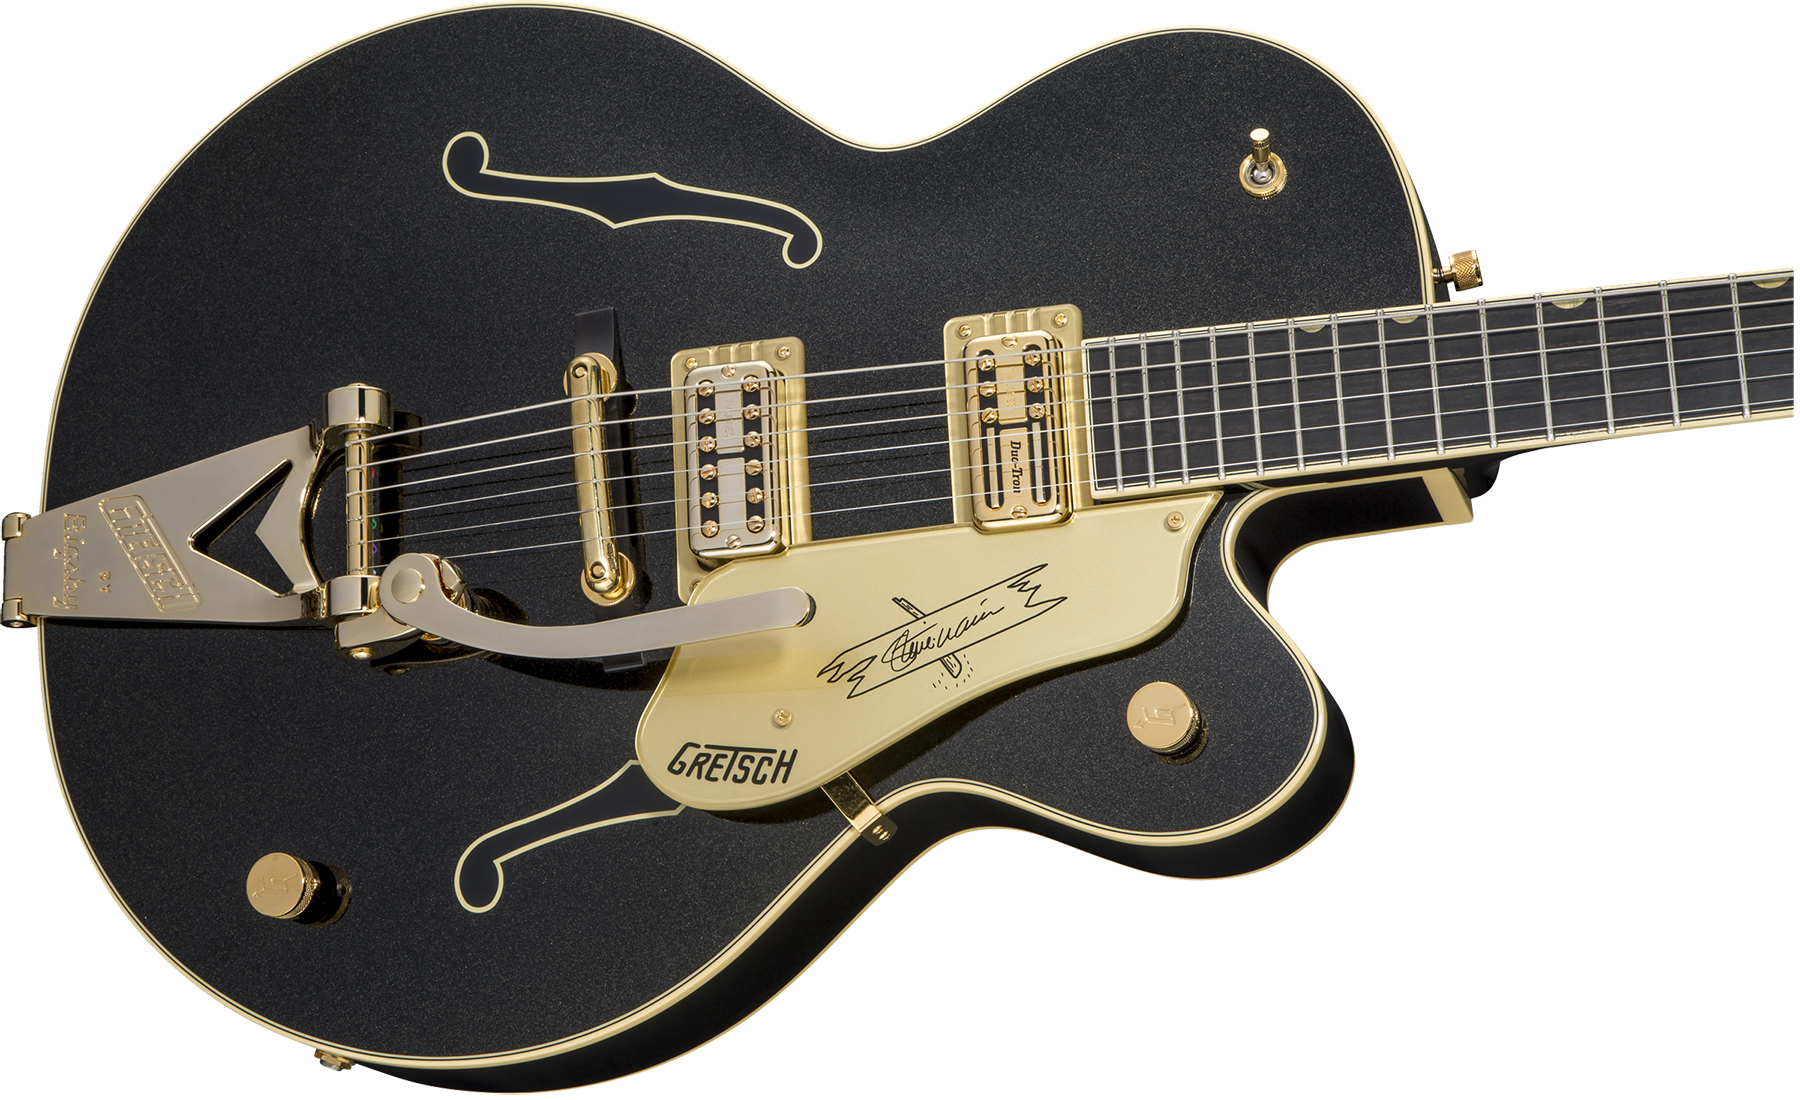 Gretsch Steve Wariner G6120t-sw Nashville Japon Signature Hh Bigsby Eb - Magic Black - Semi hollow elektriche gitaar - Variation 2